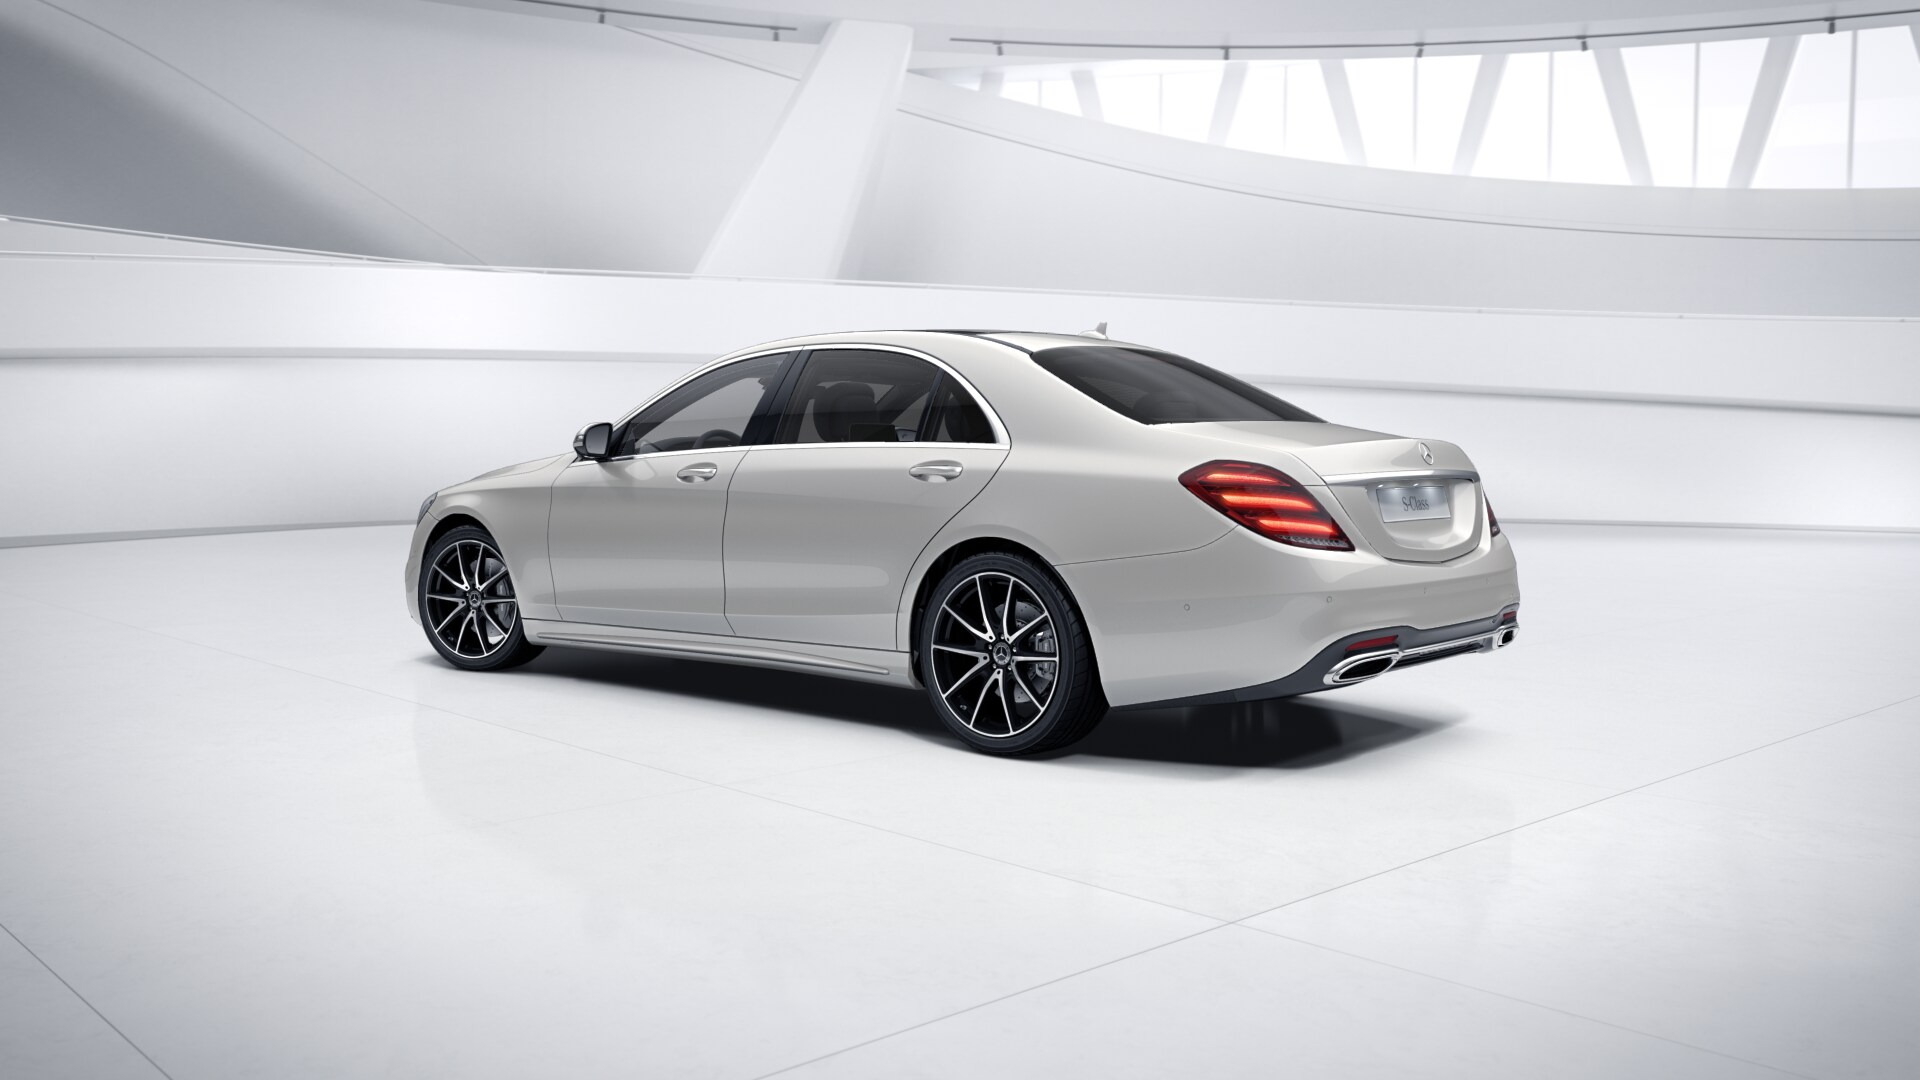 Mercedes S 400d 4matic 9G-tronic AMG LONG | luxusní naftová limuzína | nové auto | maximální výbava | super cena 2.519.000,- Kč bez DPH